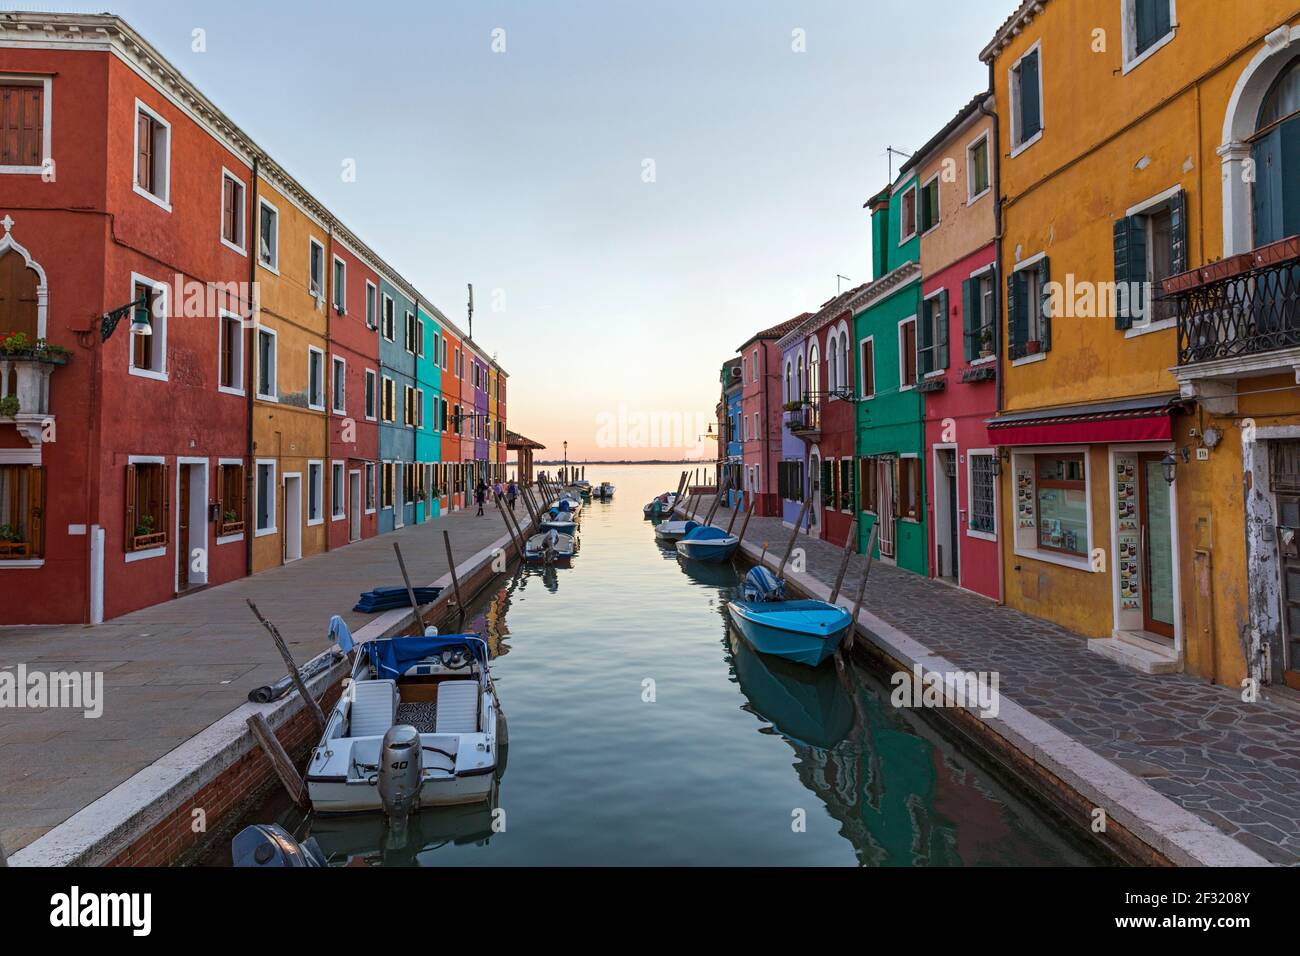 Die venezianische Insel Burano, Boote auf einem Kanal, bunte Häuser und Geschäfte in der Dämmerung mit Menschen auf den Gehwegen. Stockfoto